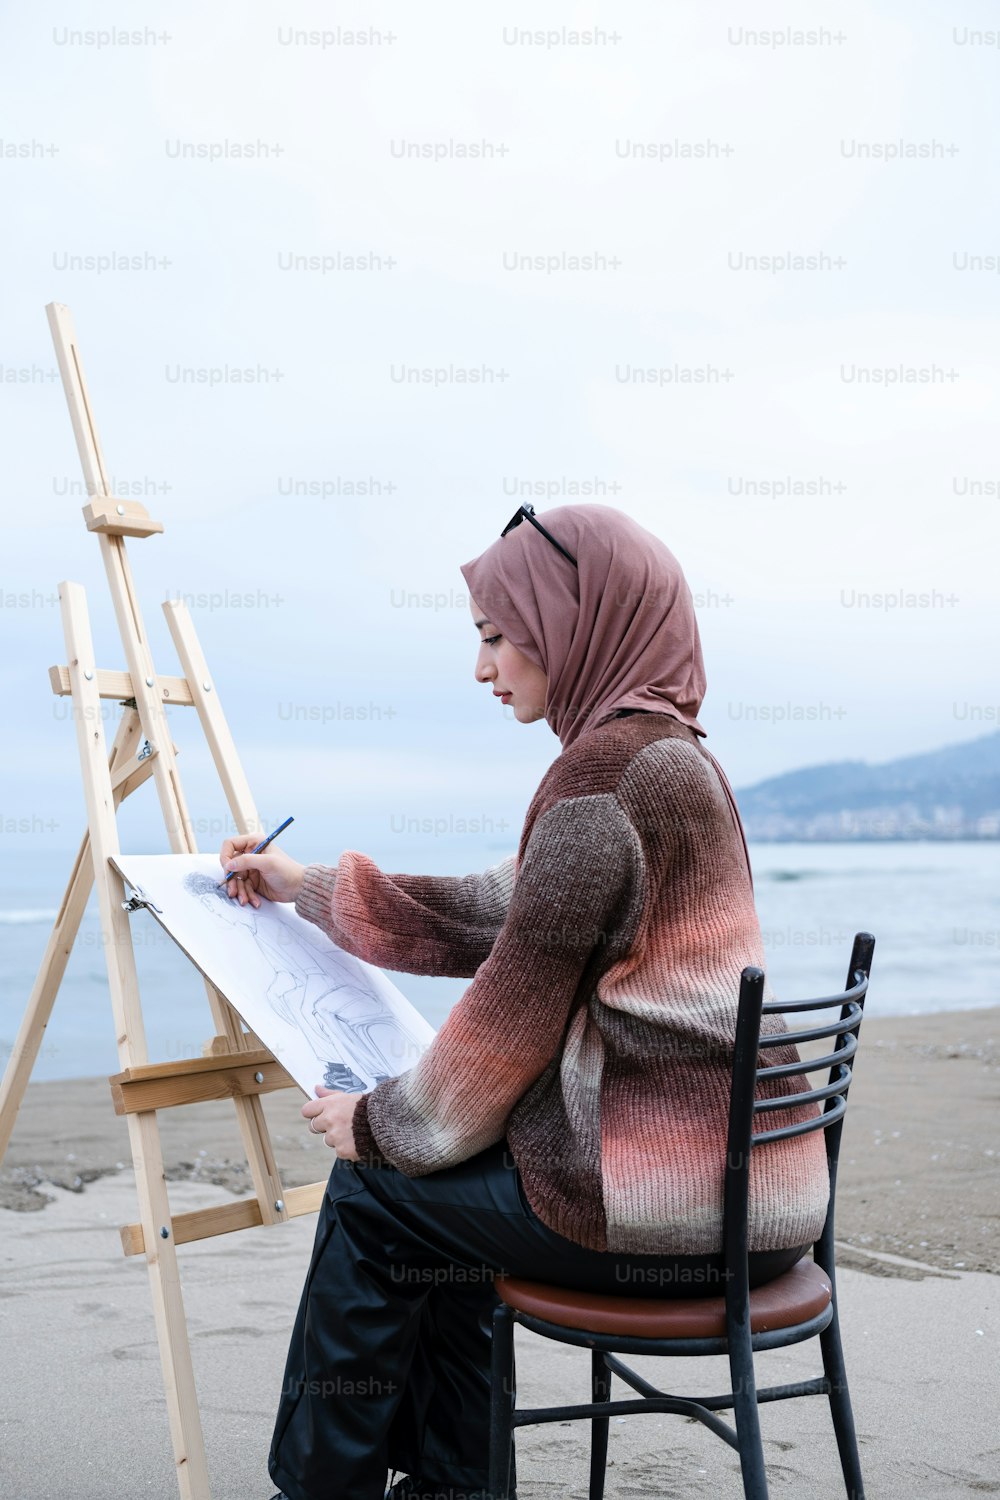 Una mujer sentada en una silla escribiendo en un pedazo de papel